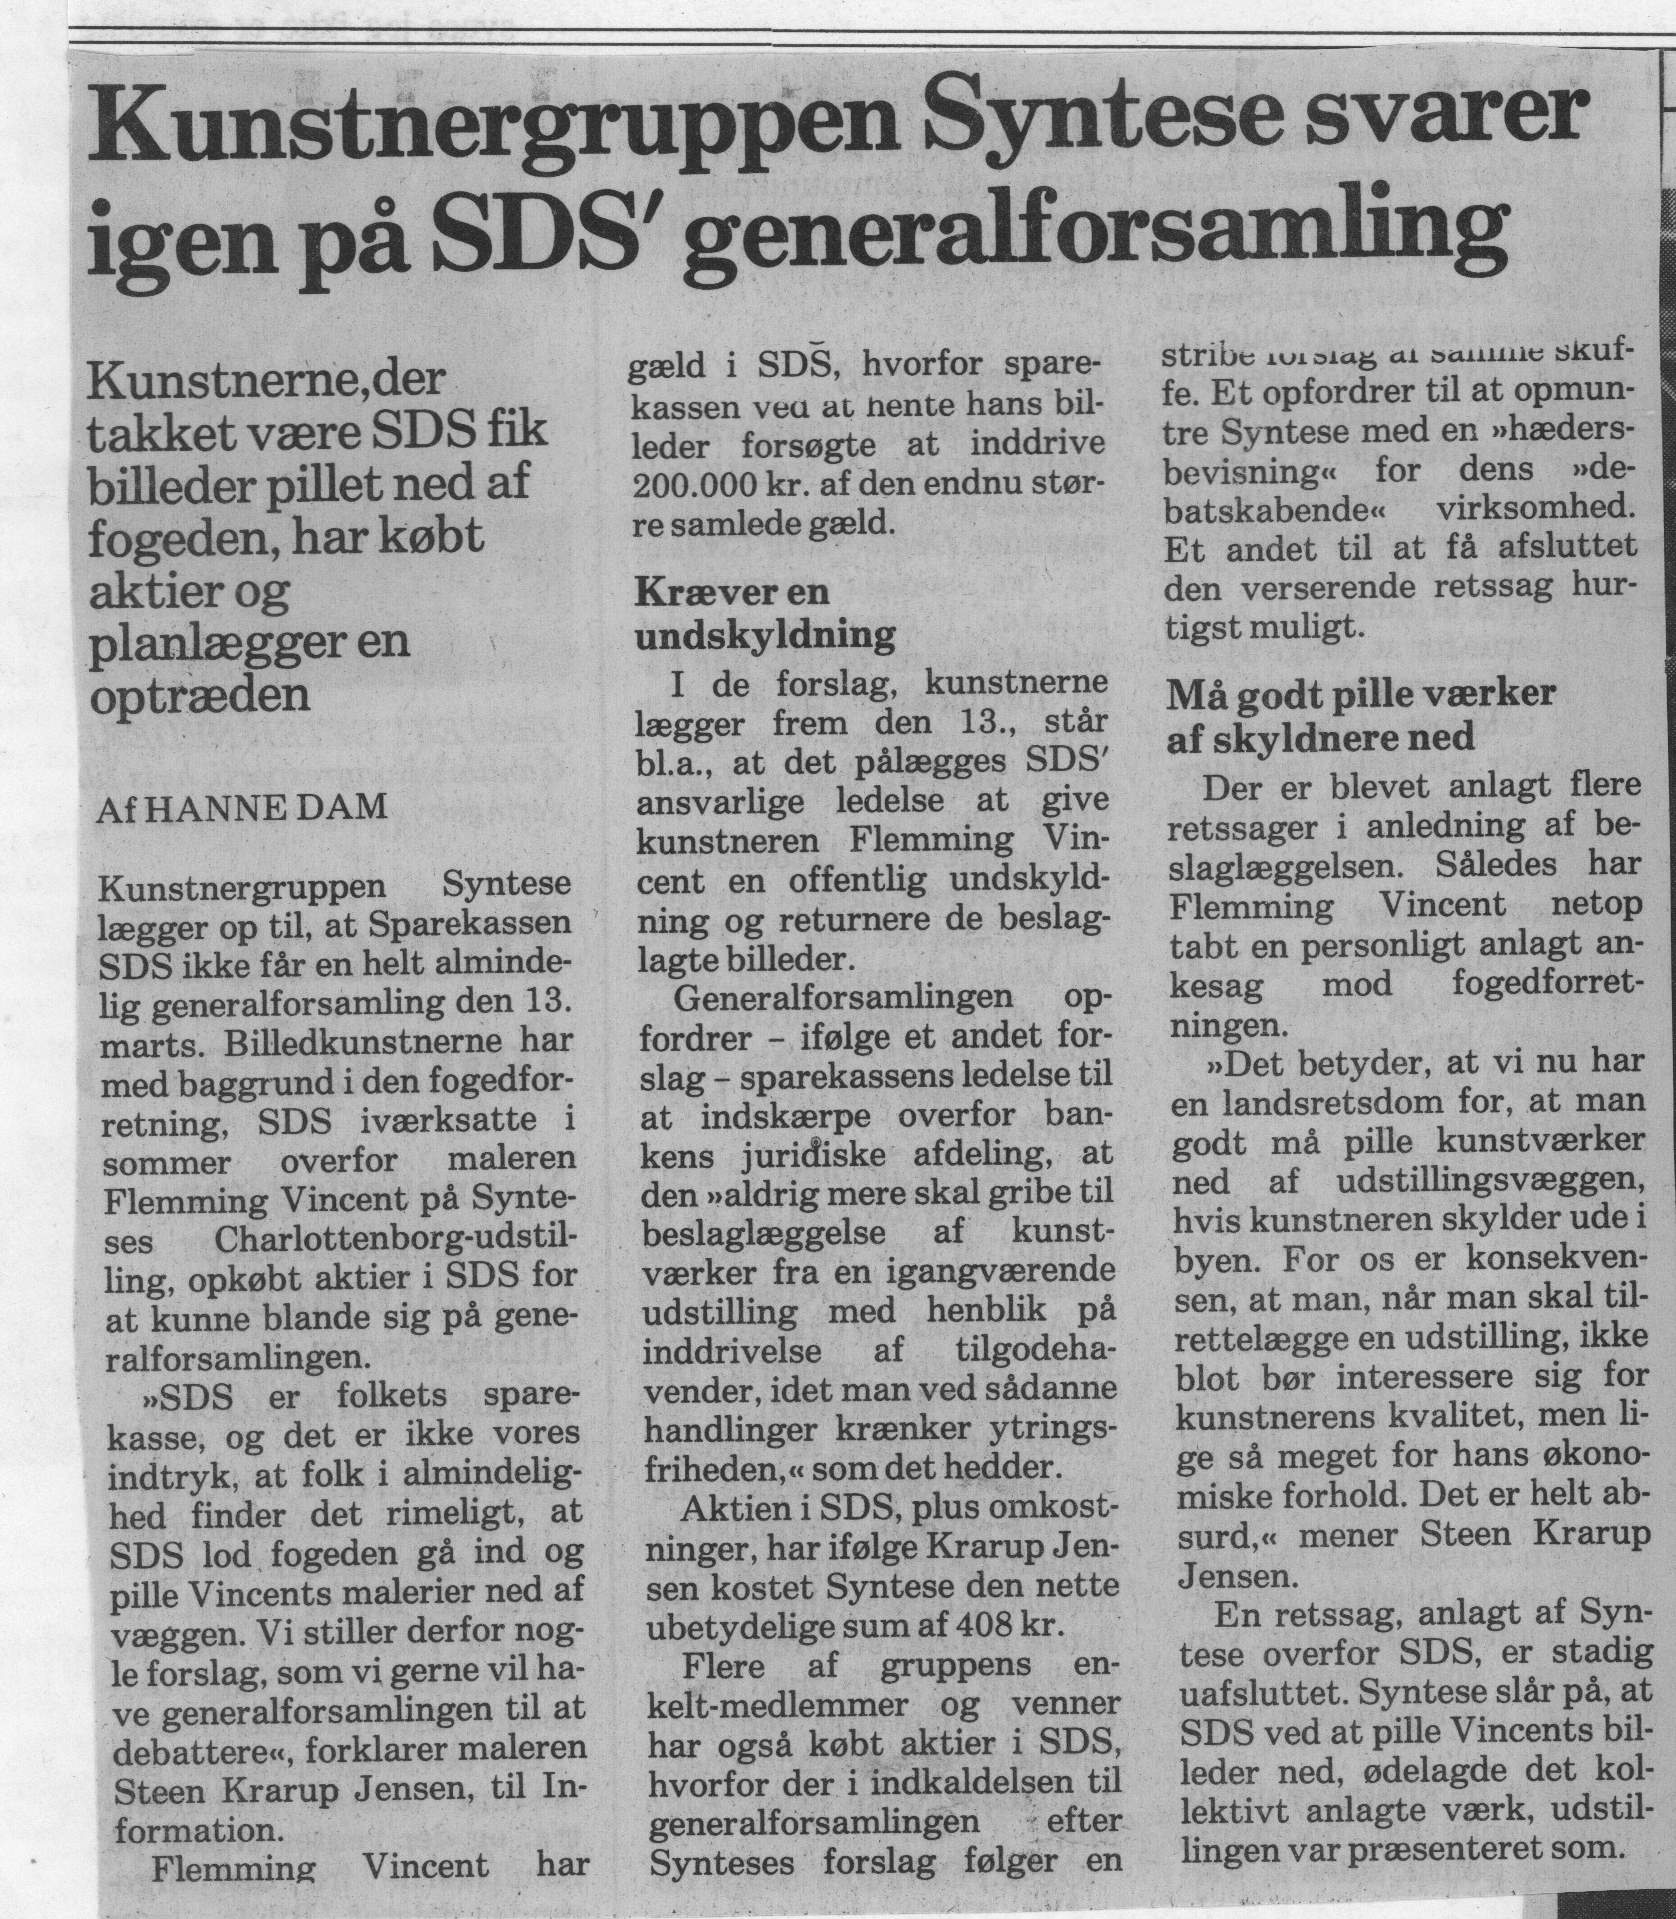 Kunstnergruppen Syntese svarer igen på SDSs generalforsamling. Omtale (Retssag. Den lange rejse. Charlottenborg 1989, København). Hanne Dam. Information.